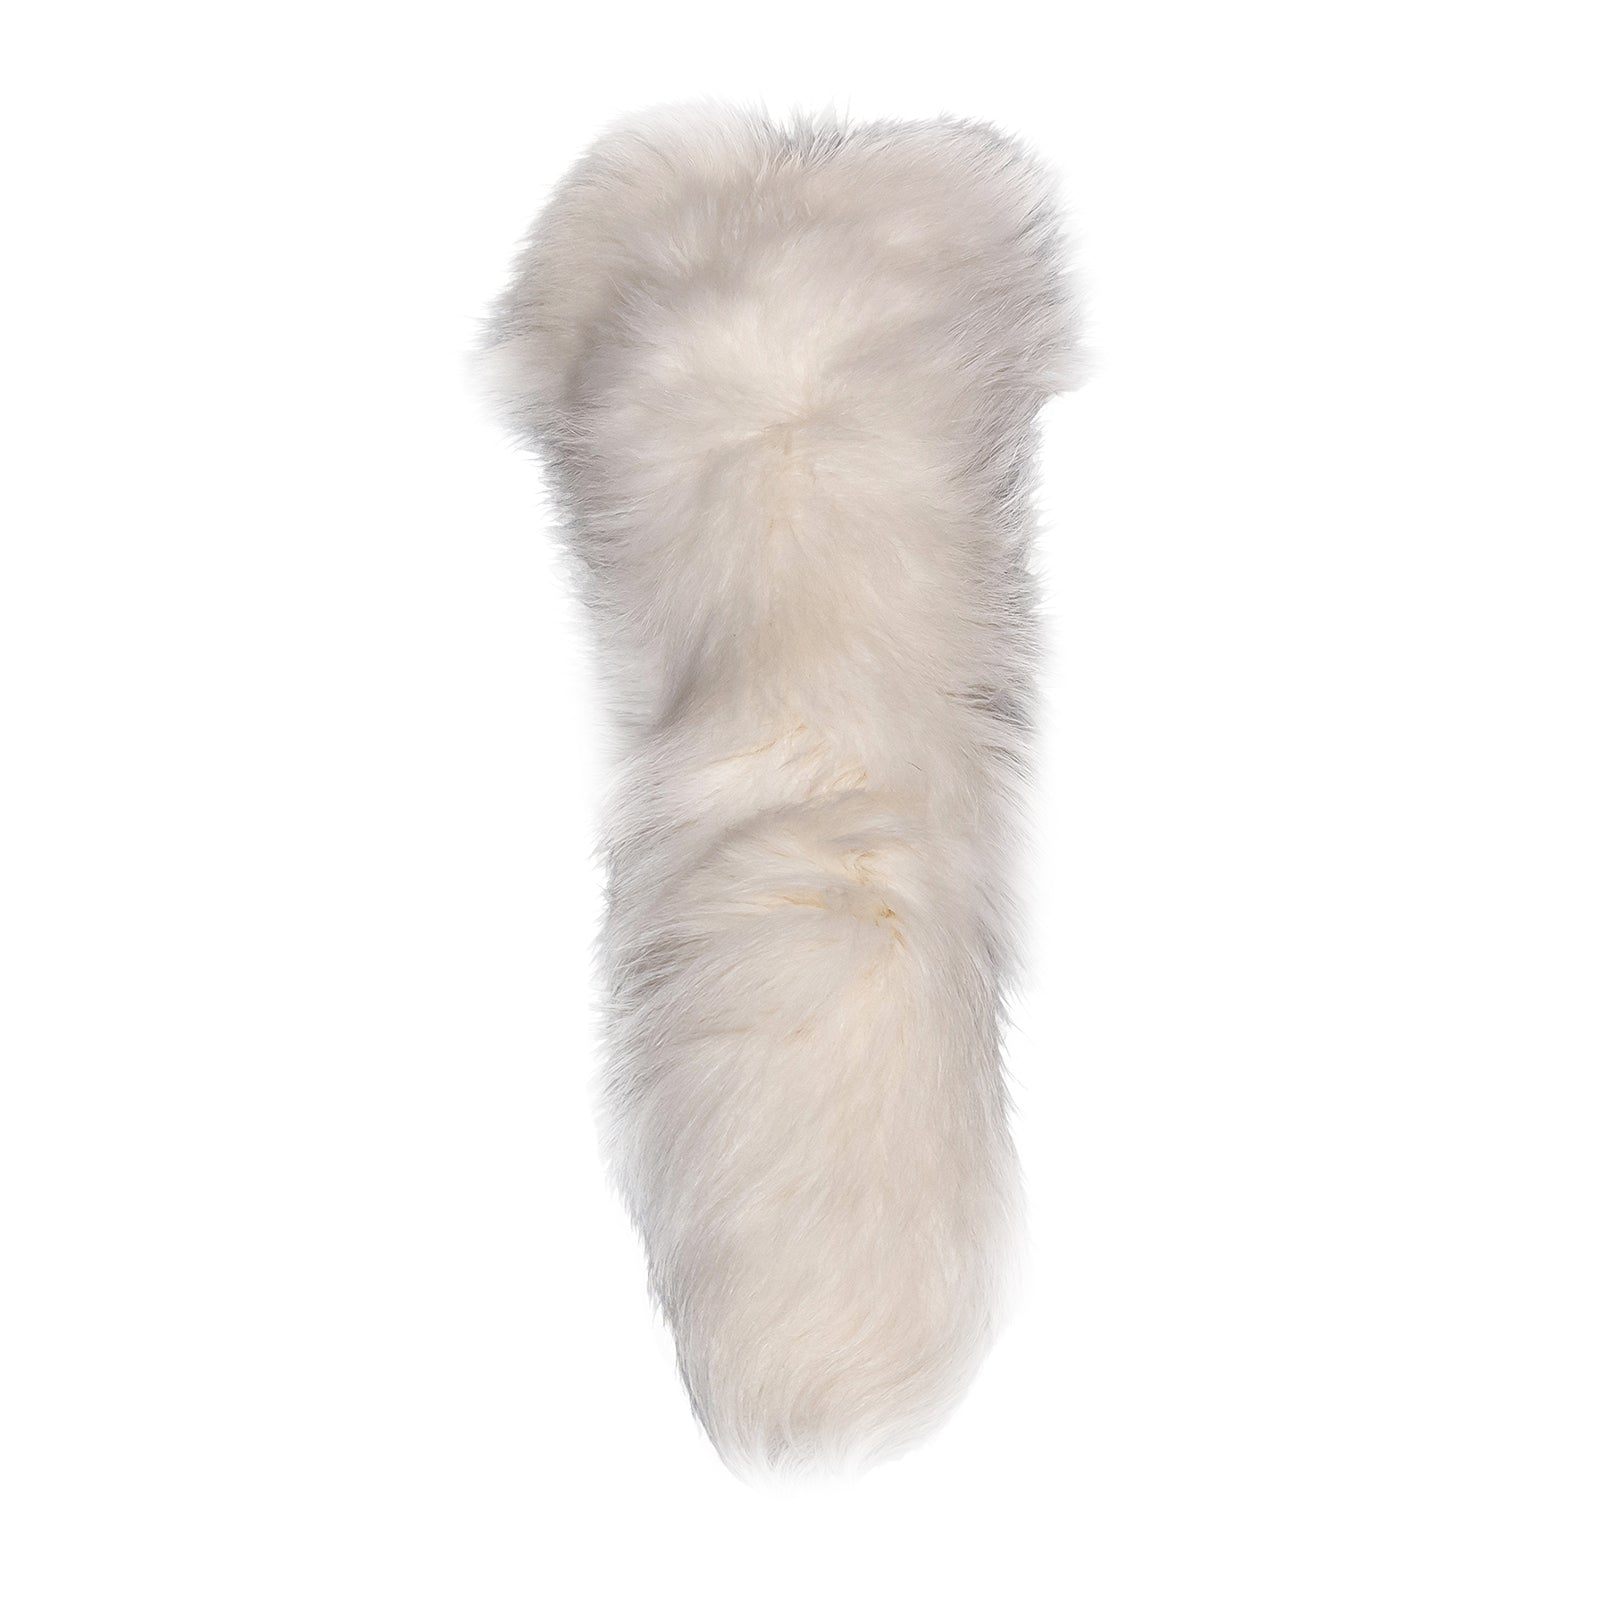 Fox+Tail  Fashion, White jeans, White fur